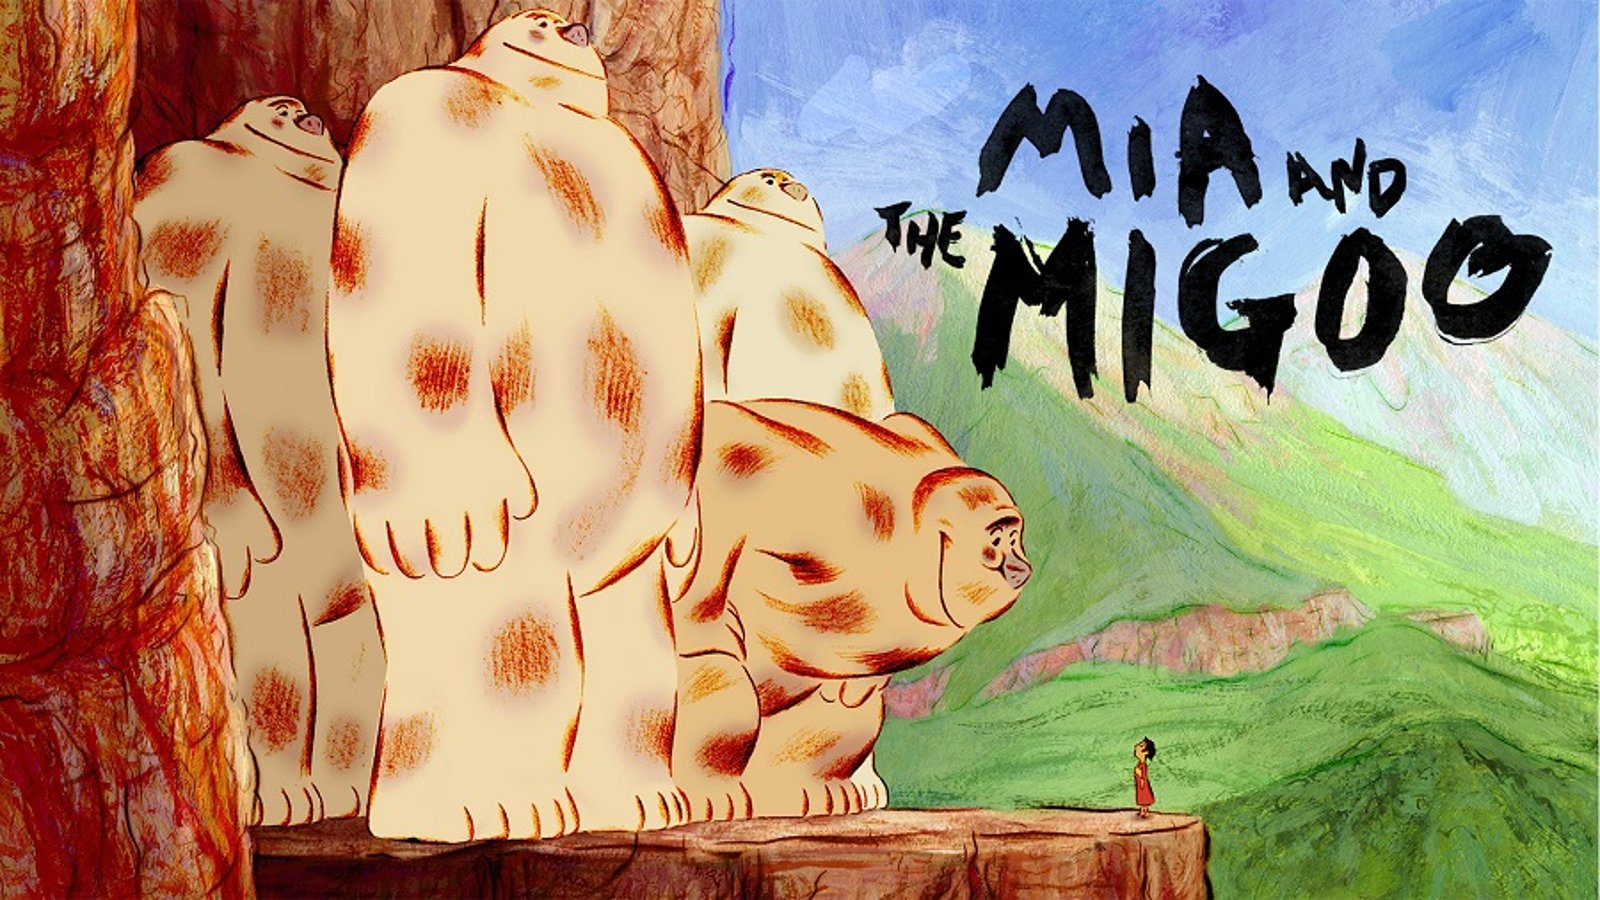 Mia and the Migoo - Mia et le Migou